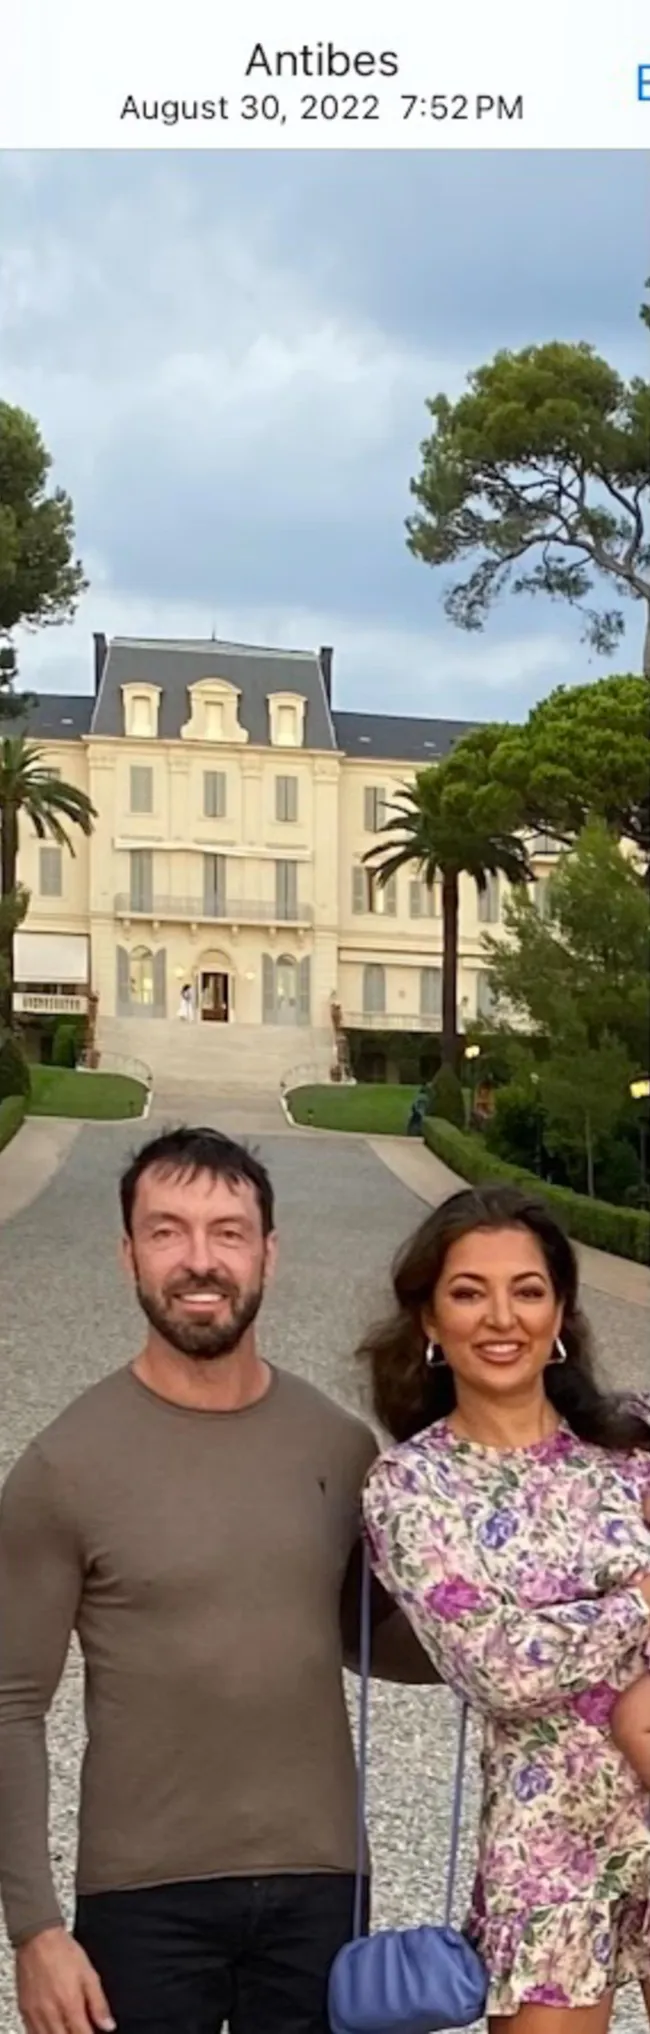 Glidden y Rabia son vistos juntos aquí en Francia el 30 de agosto de 2022.